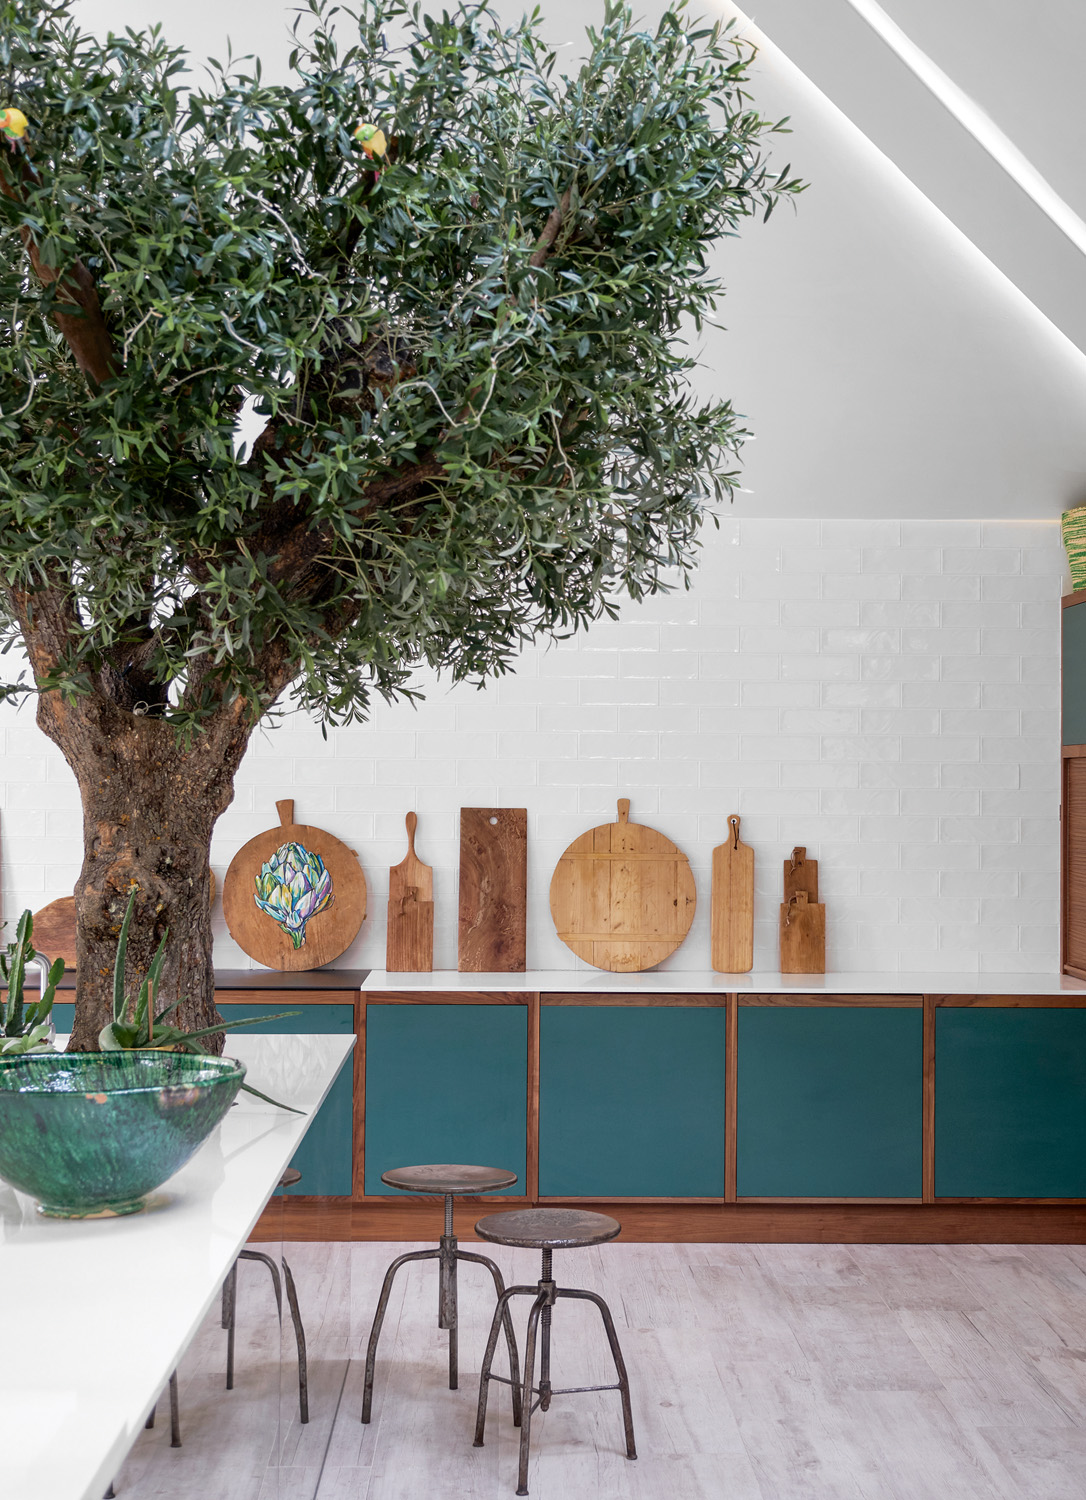 Luxury Scandinavian kitchen design in London by Sola Kitchens - modern kitchen with interior tree